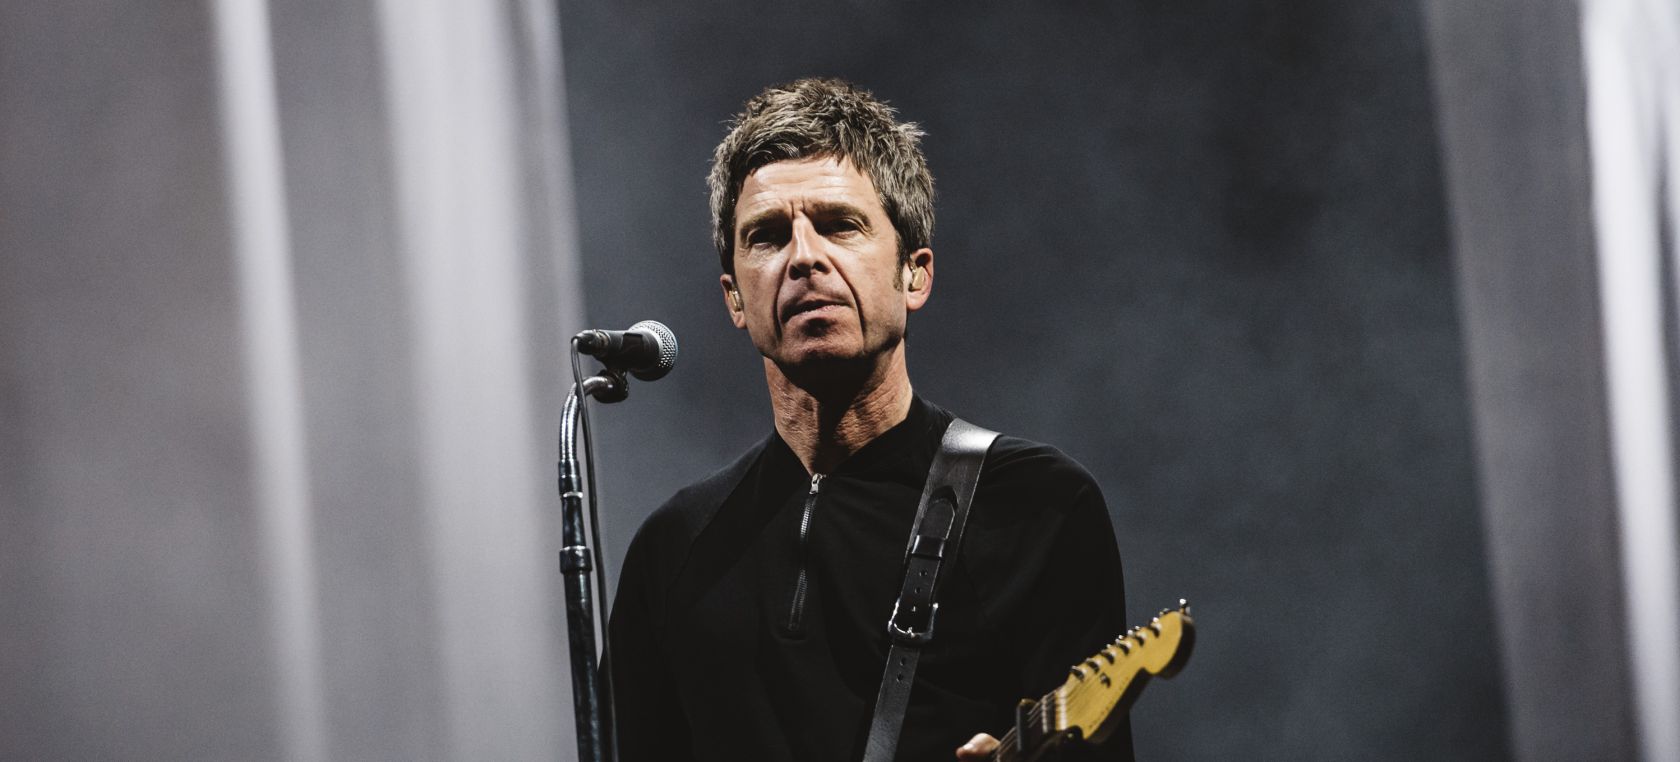 Noel Gallagher comparte una nueva demo muy oportuna para cerrar el año